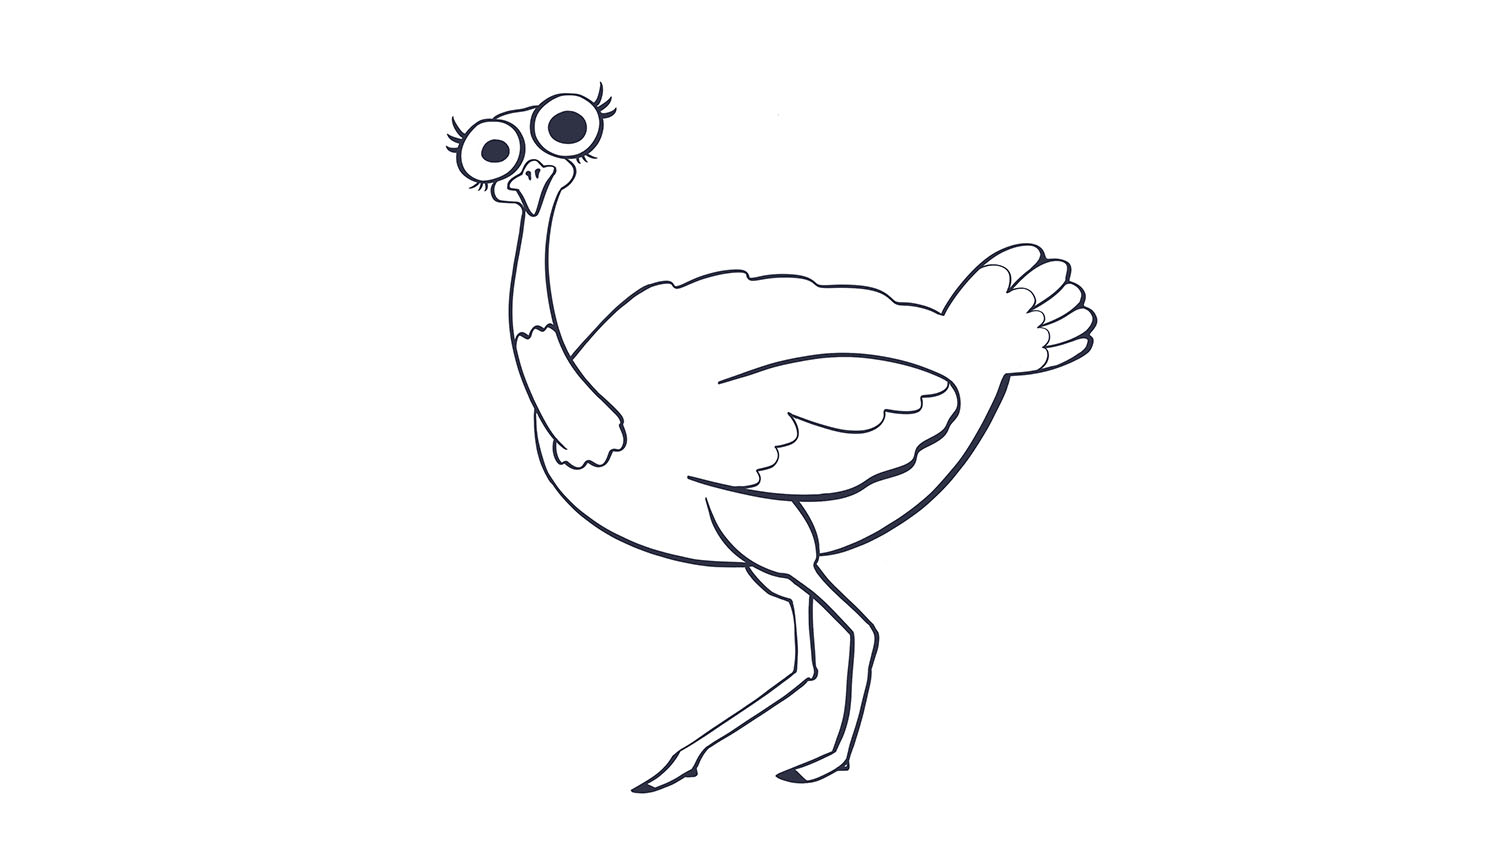 77. Avestruz / Ostrich. 103dibujos